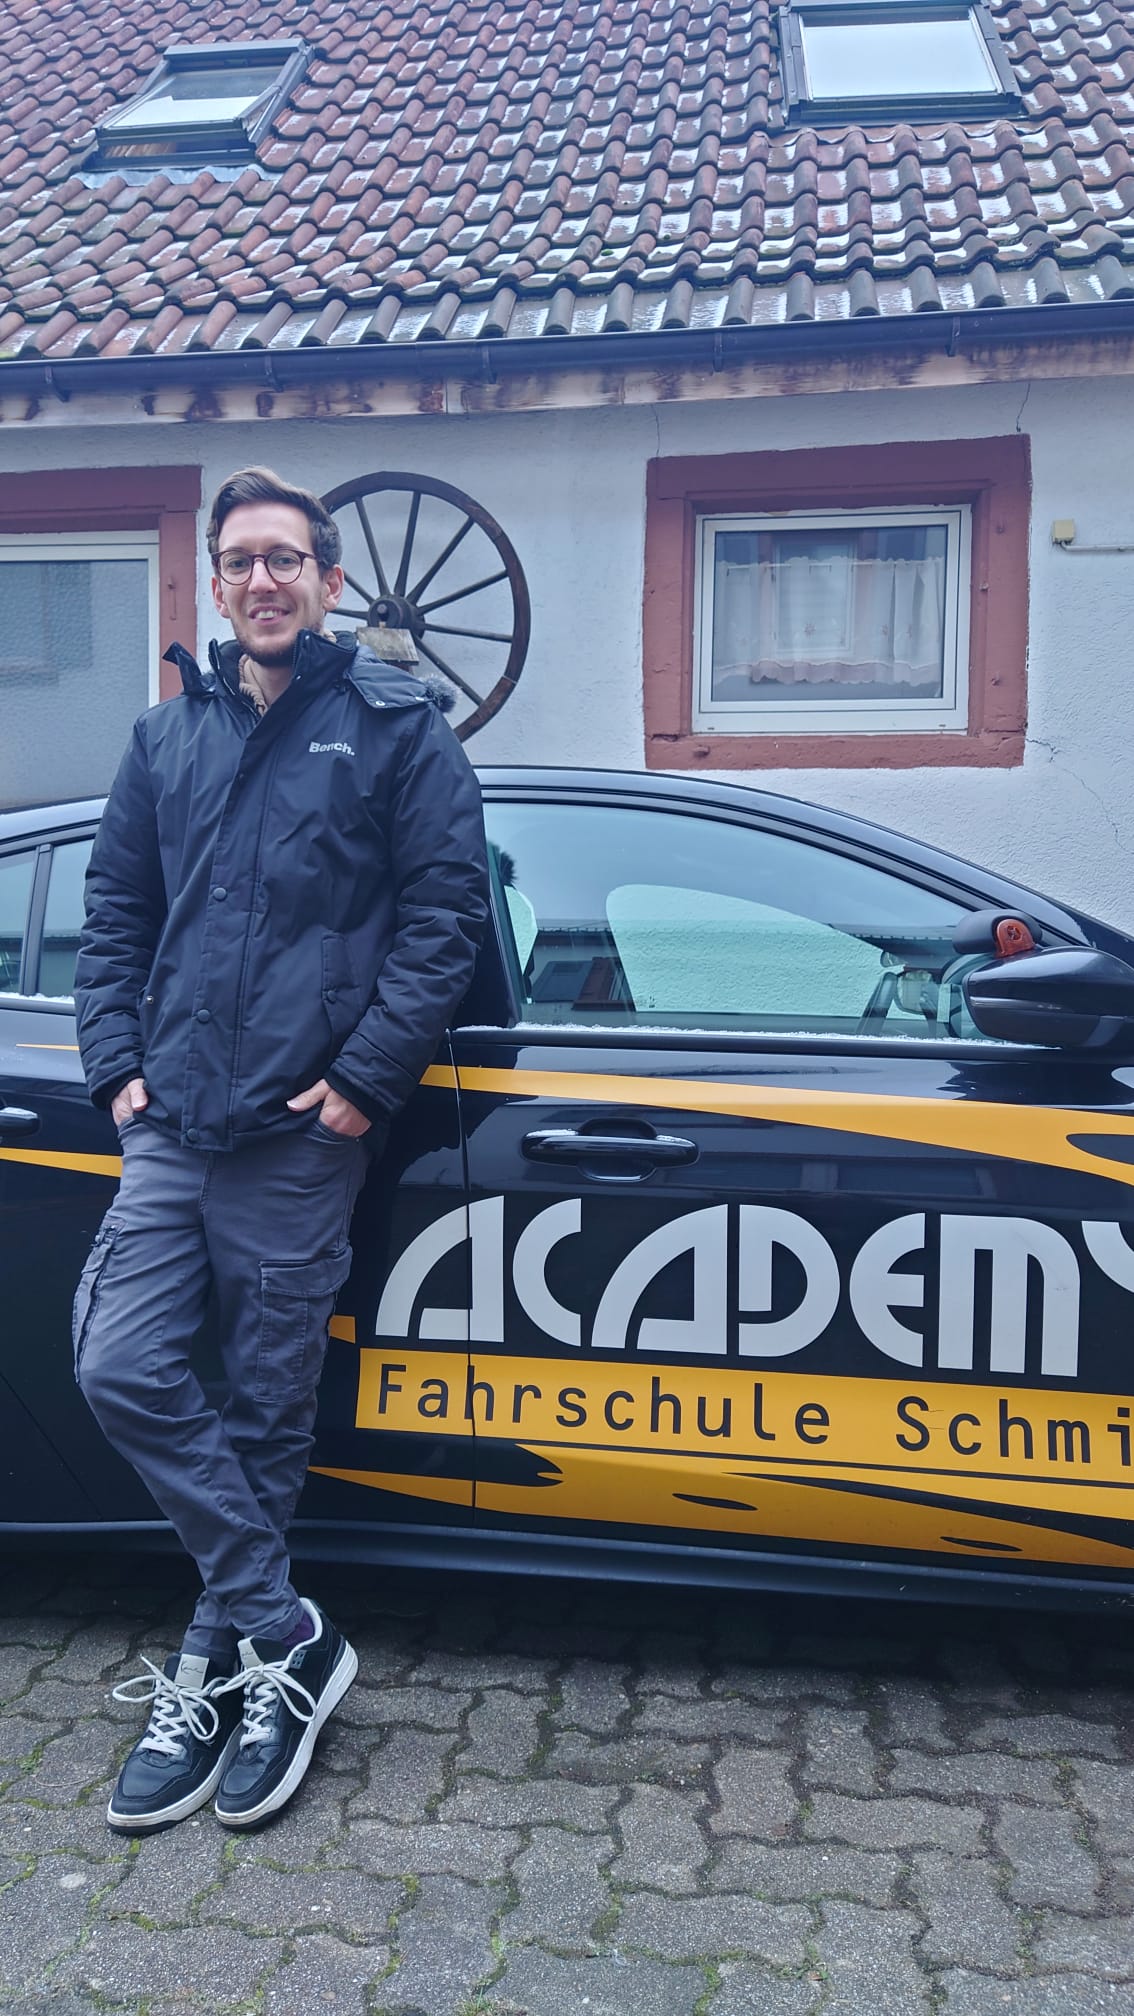 ACADEMY Fahrschule - de.academy.fahrschulen.model.instructor.Instructor@11502